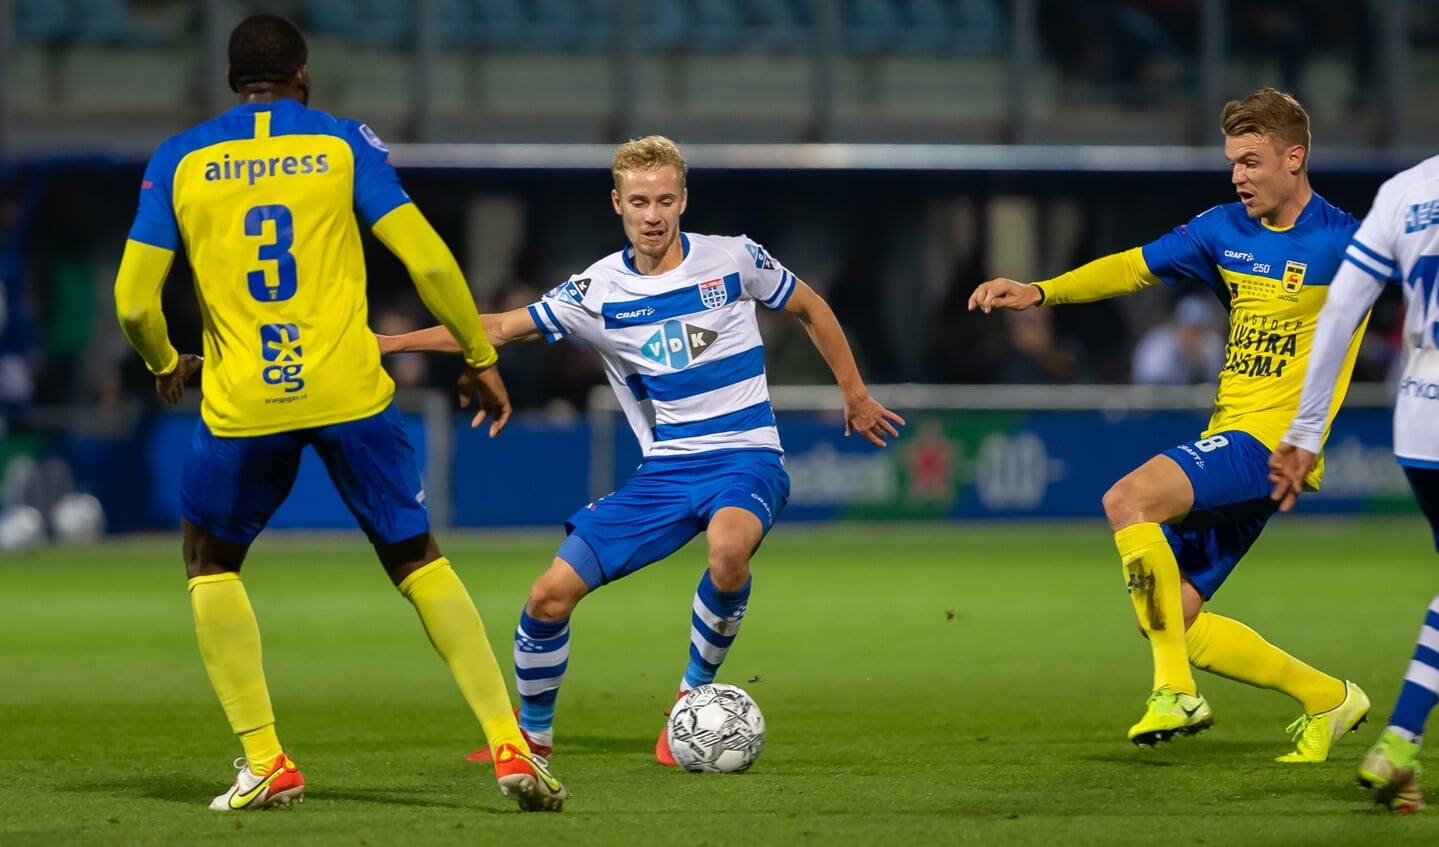 Dean Huiberts beleefde weinig plezier aan zijn eerste eredivisiedoelpunt voor PEC Zwolle, dat de belangrijke wedstrijd tegen Cambuur Leeuwarden met 1-2 verloor.